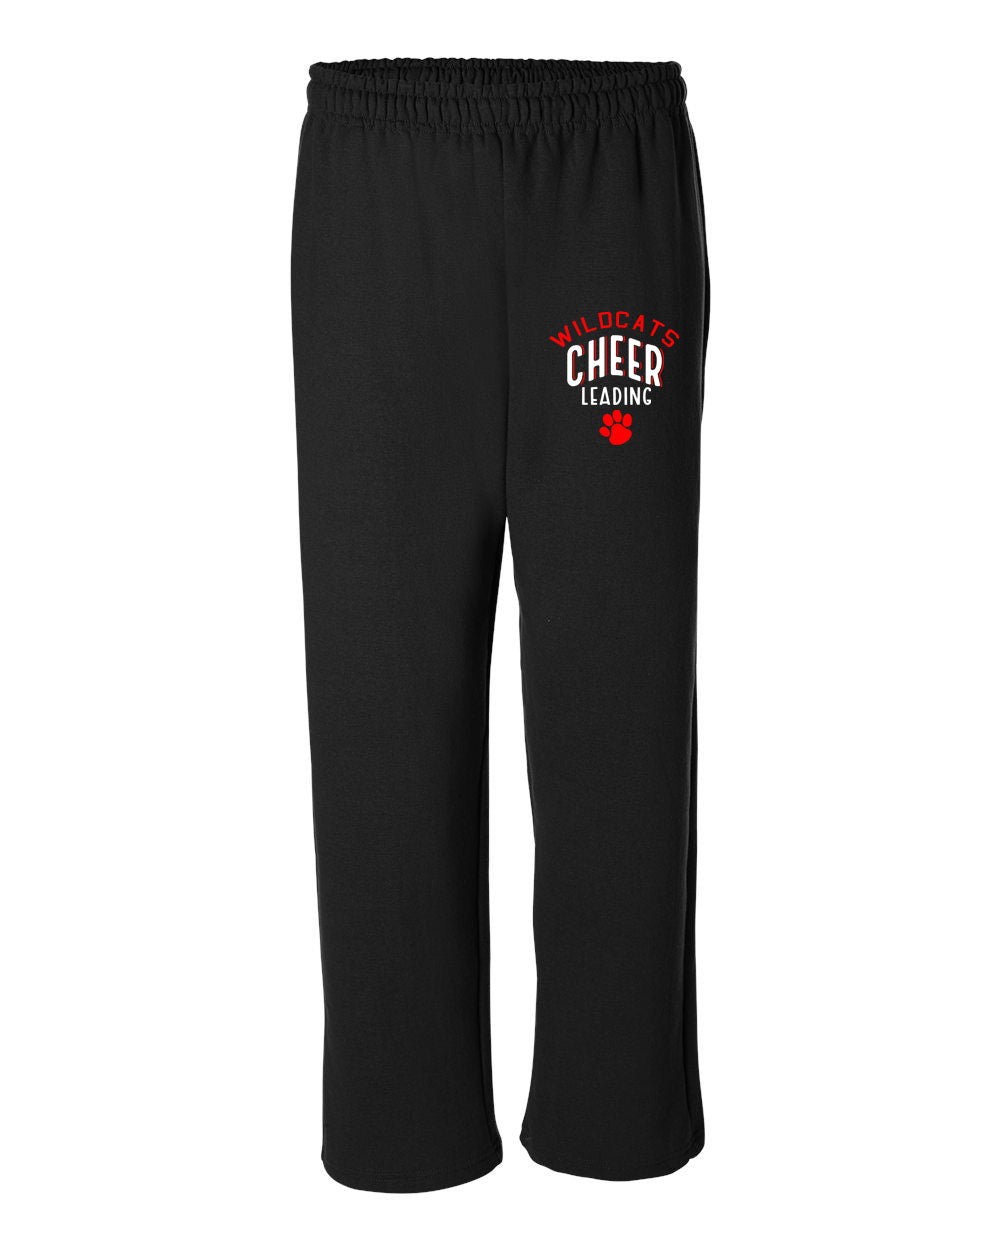 Wildcats Cheer Design 5 Open Bottom Sweatpants